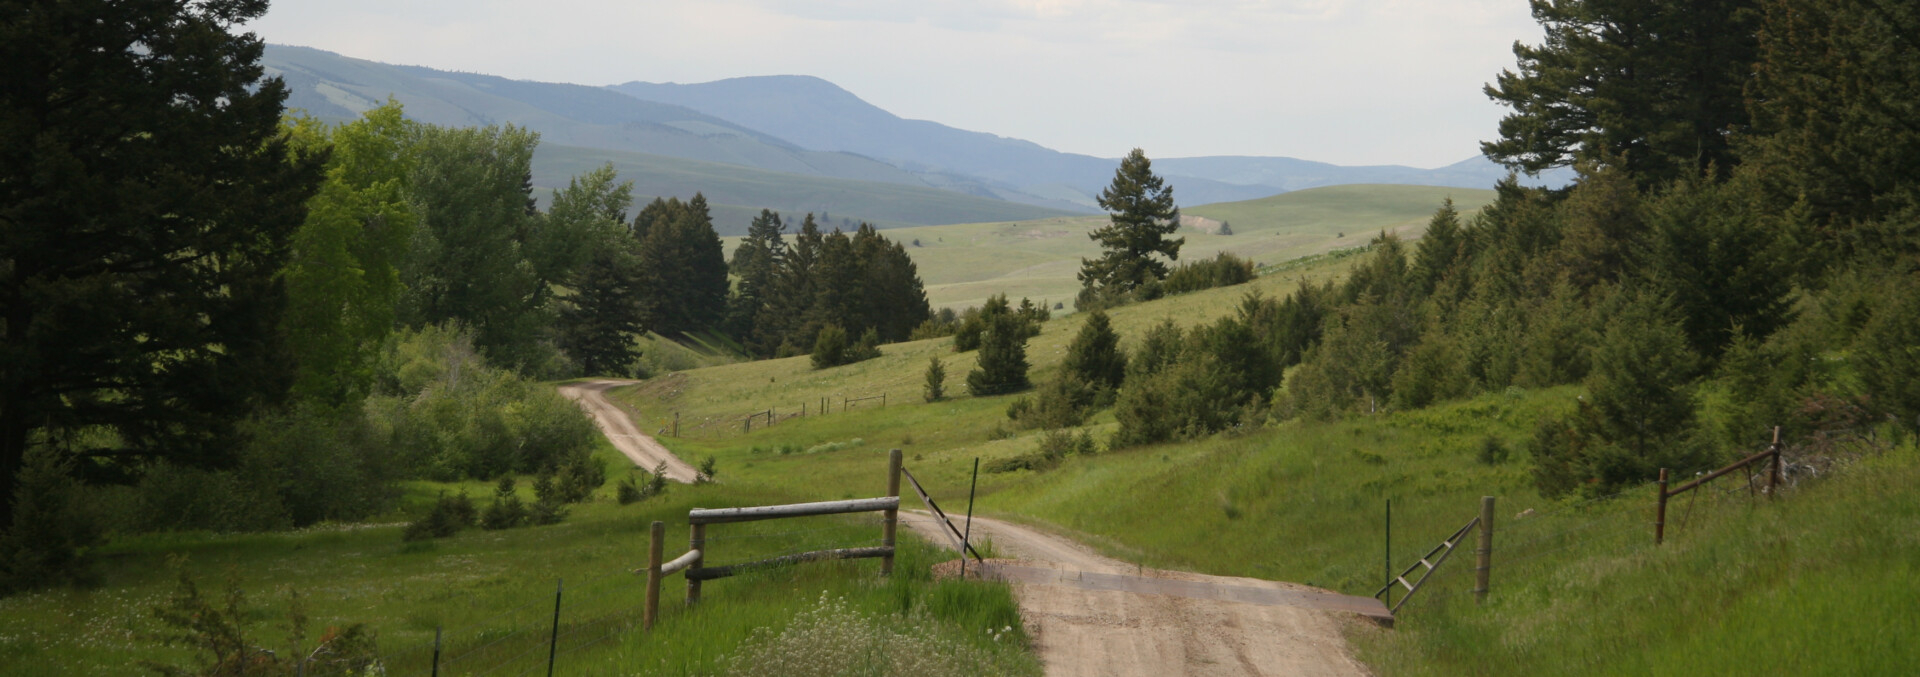 montana ranches for sale gird creek ranch